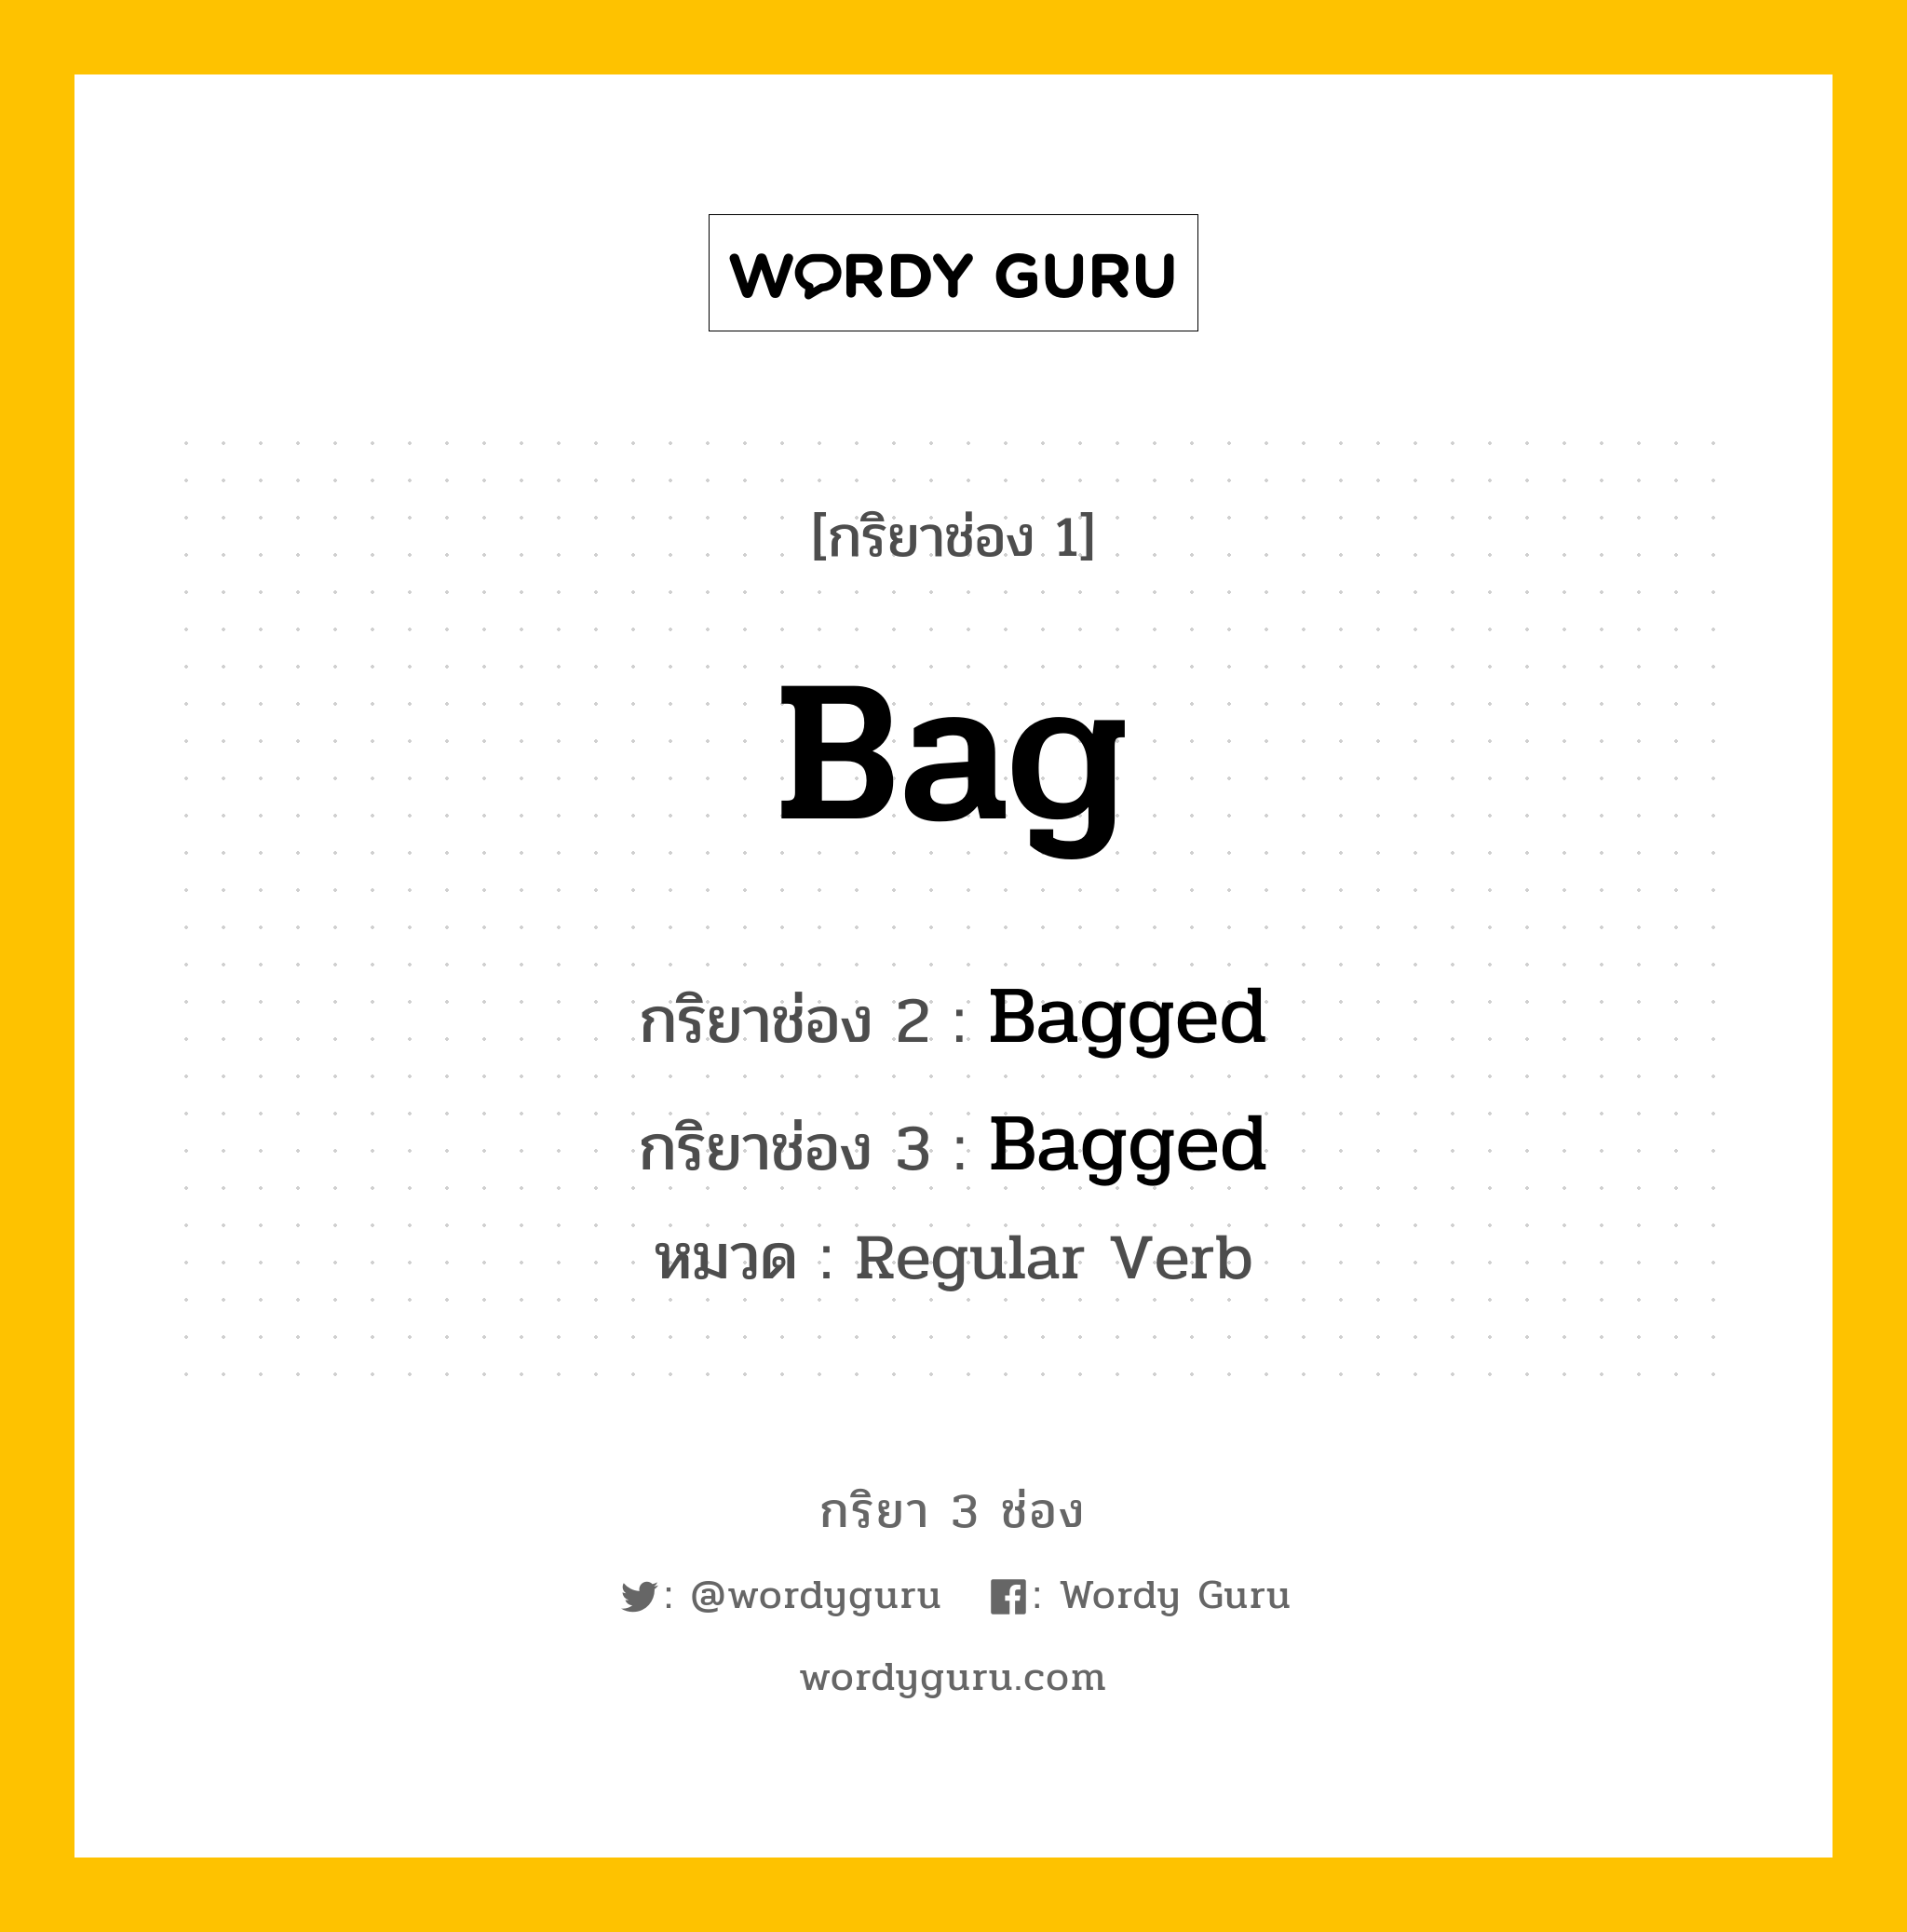 กริยา 3 ช่อง: Bag ช่อง 2 Bag ช่อง 3 คืออะไร, กริยาช่อง 1 Bag กริยาช่อง 2 Bagged กริยาช่อง 3 Bagged หมวด Regular Verb หมวด Regular Verb